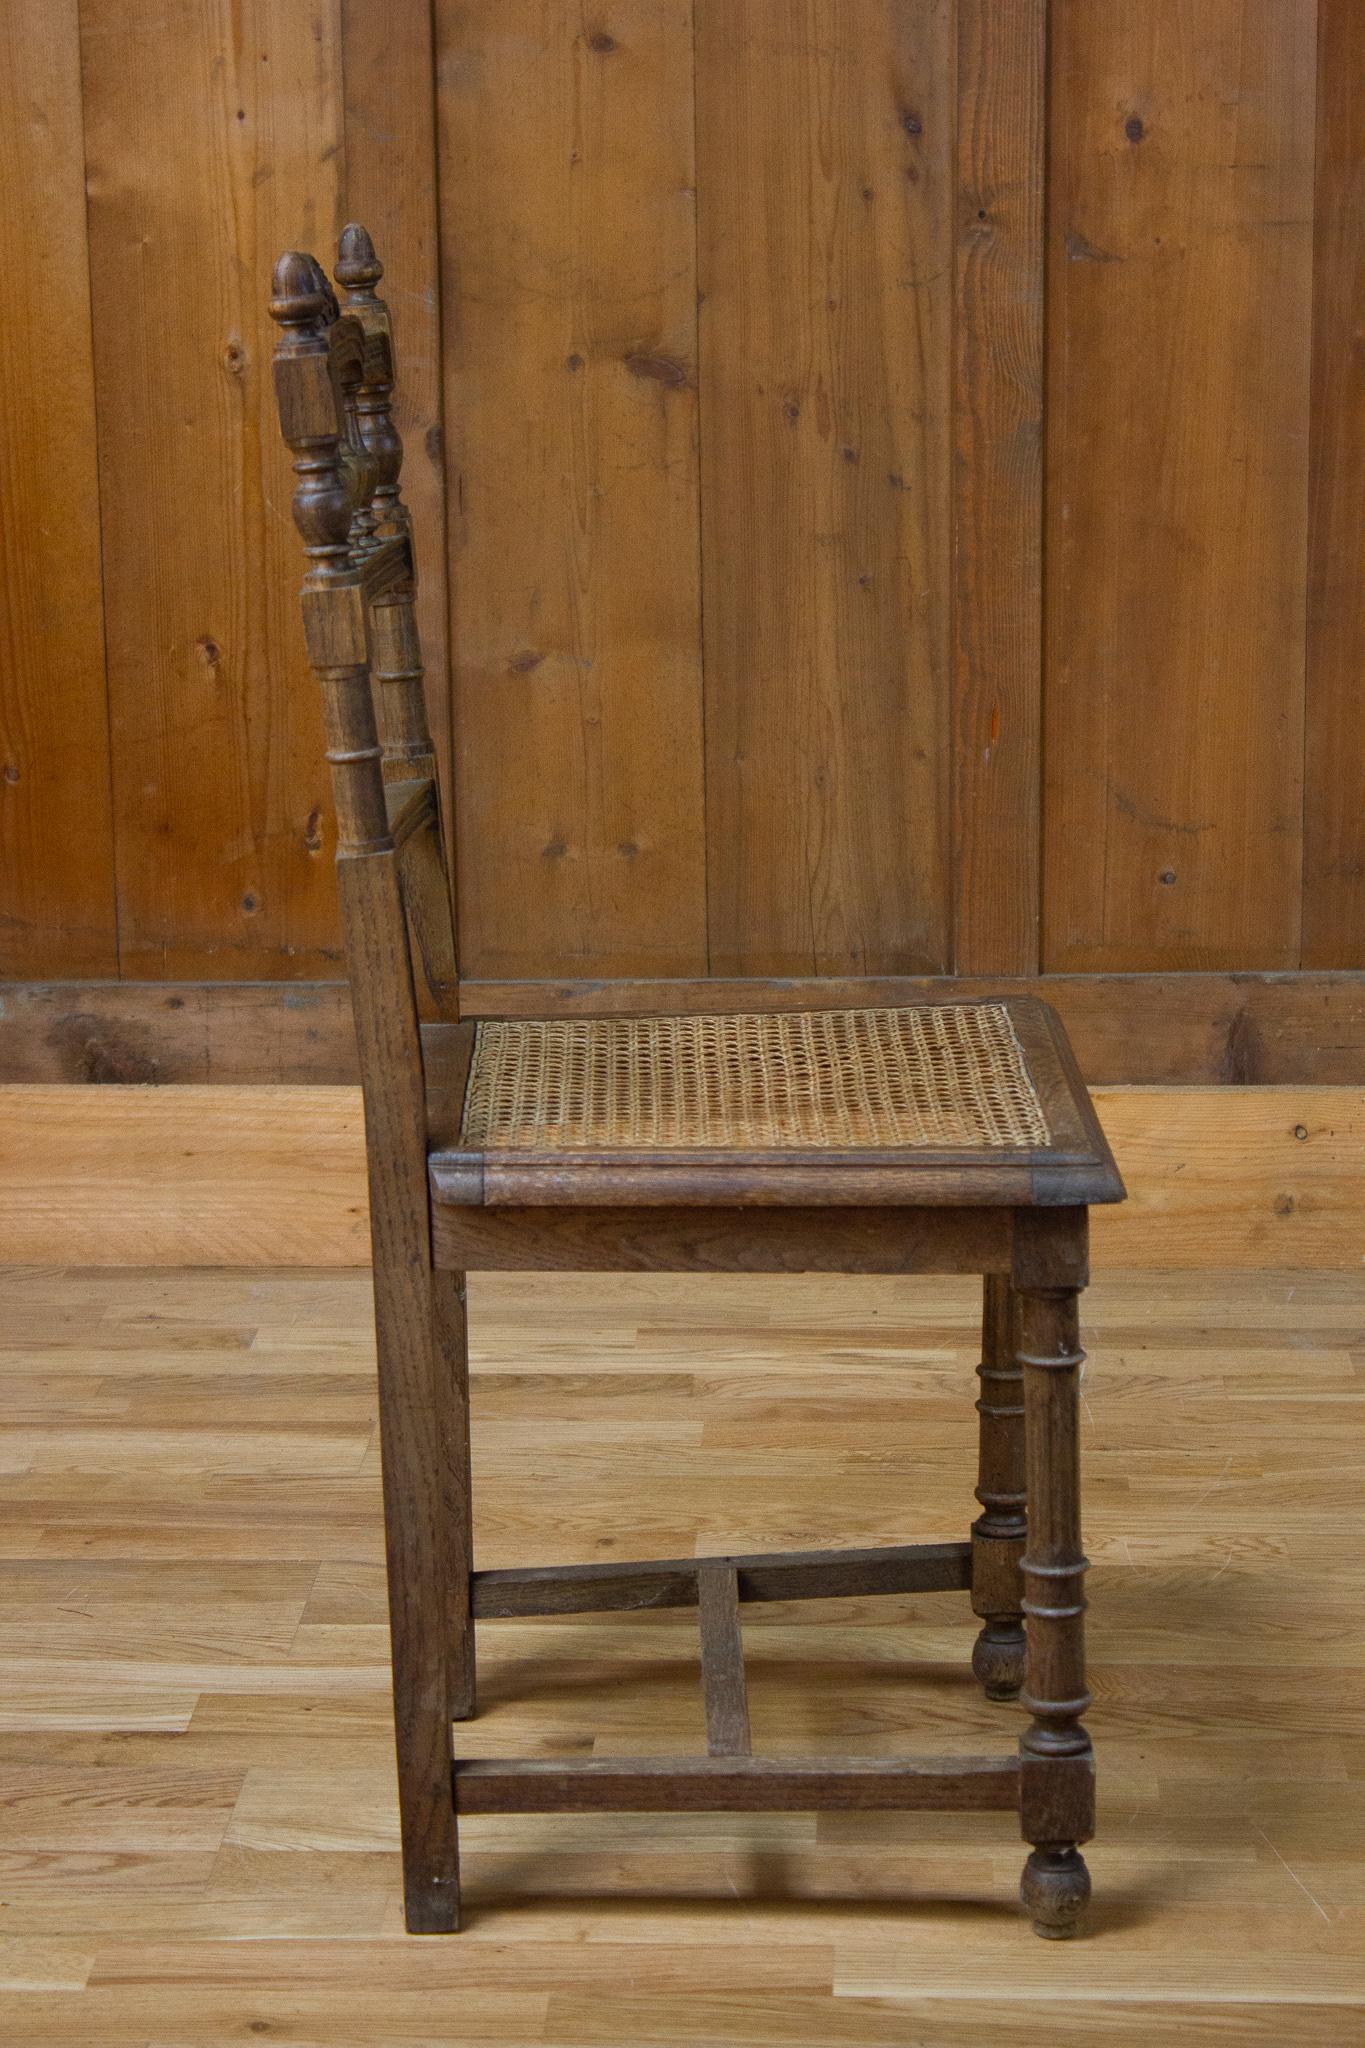 Belle chaise de style Henri II datant du 19ème siècle. Il est constitué d'une base droite reliée par une jambe de force. Son siège est en canne. Son dos est entièrement sculpté de motifs architecturaux, principalement des colonnes. 

France